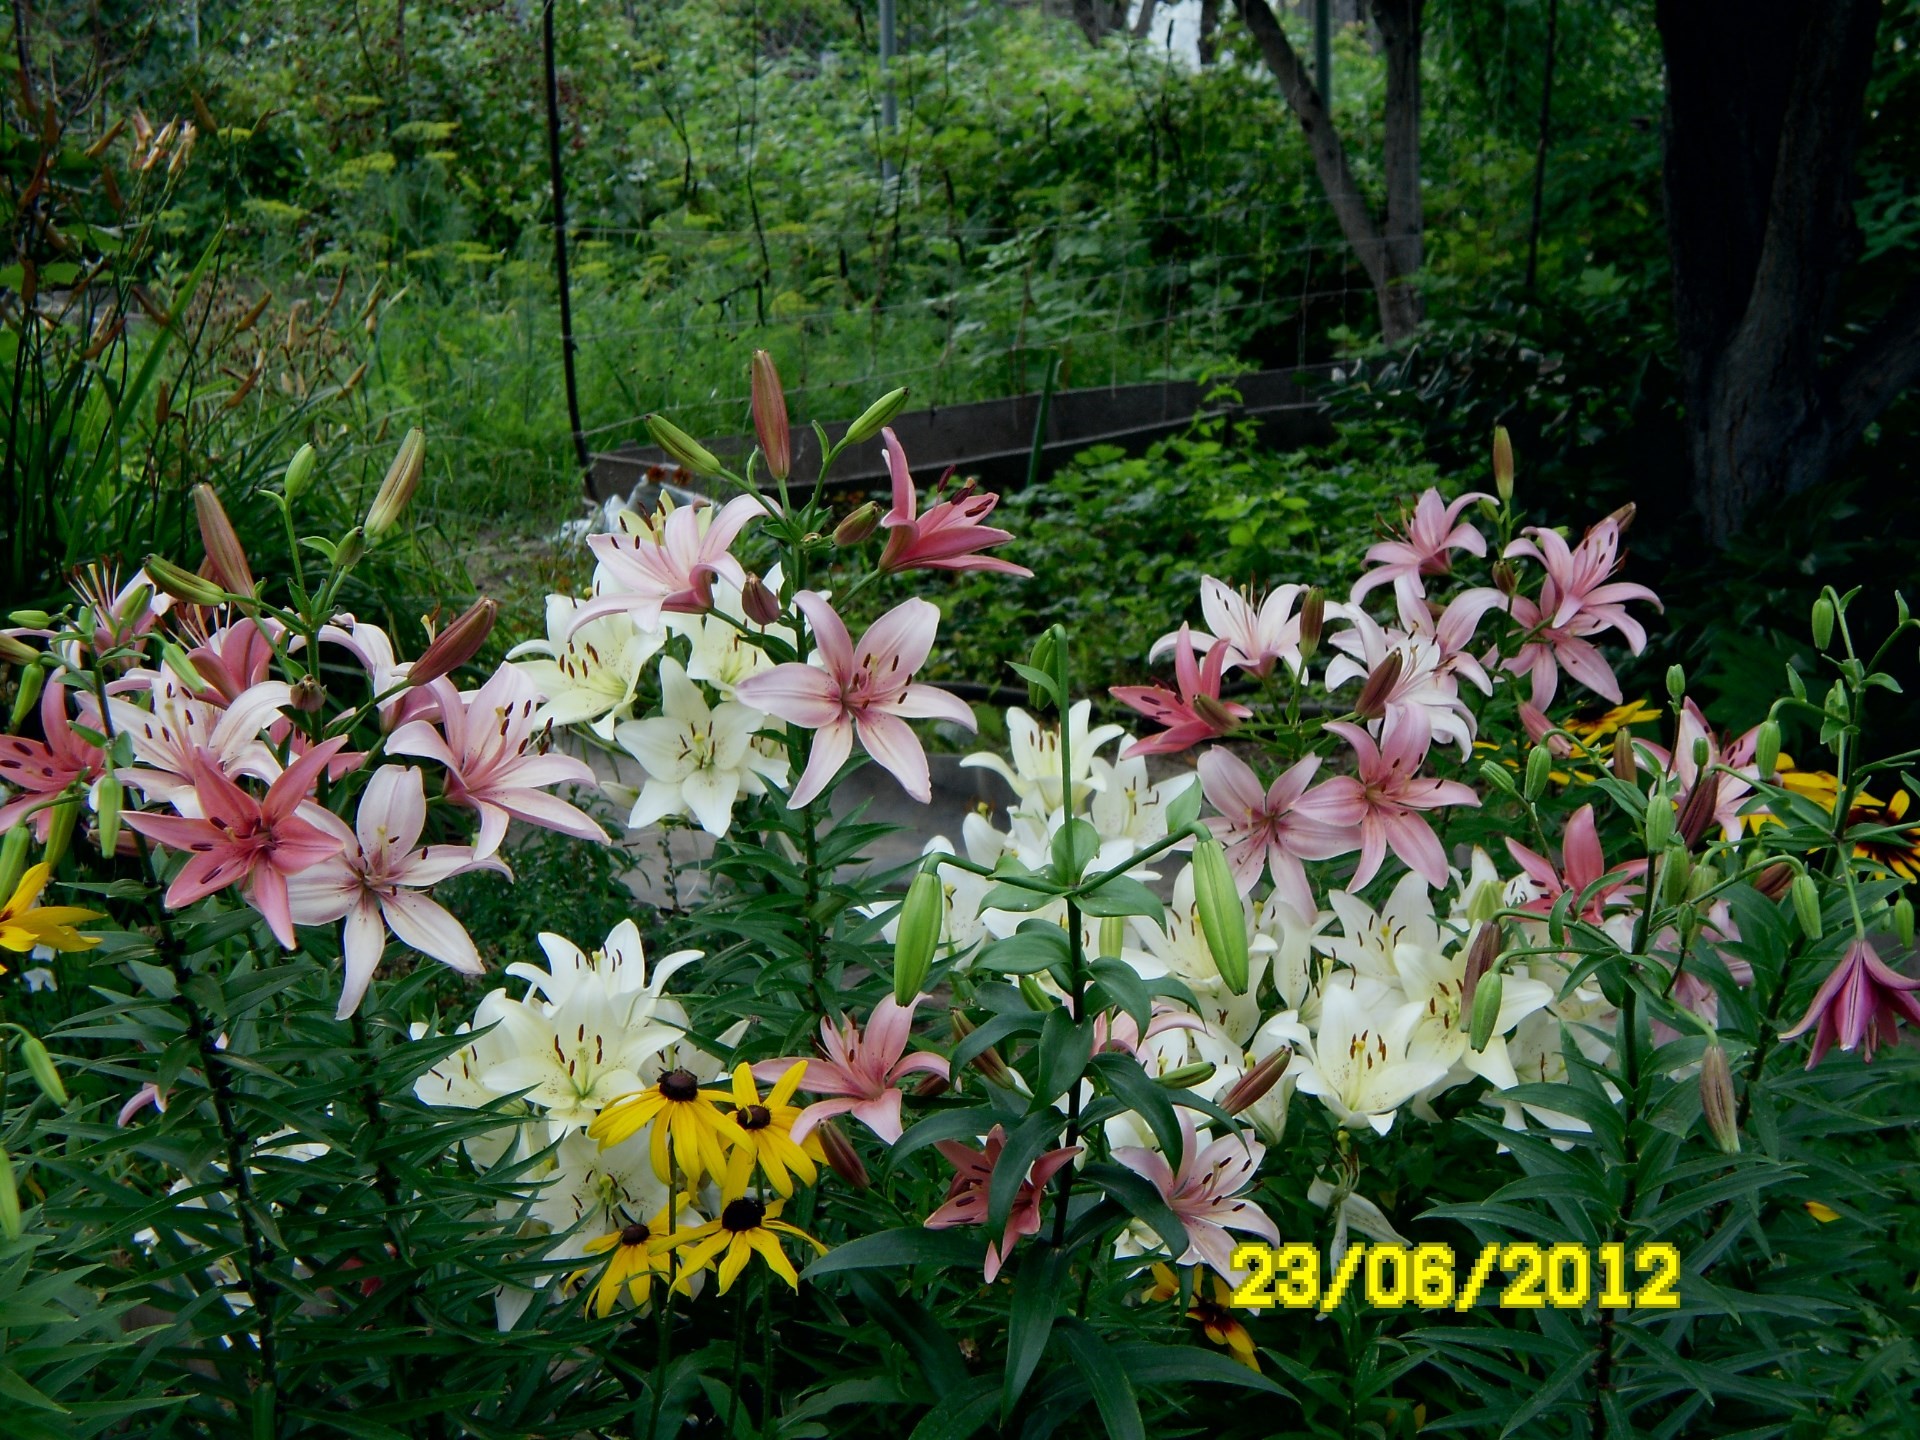 цветы цветок природа сад флора лето лист блюминг цветочные лепесток парк цвет сезон рост красивые ботанический яркий крупным планом